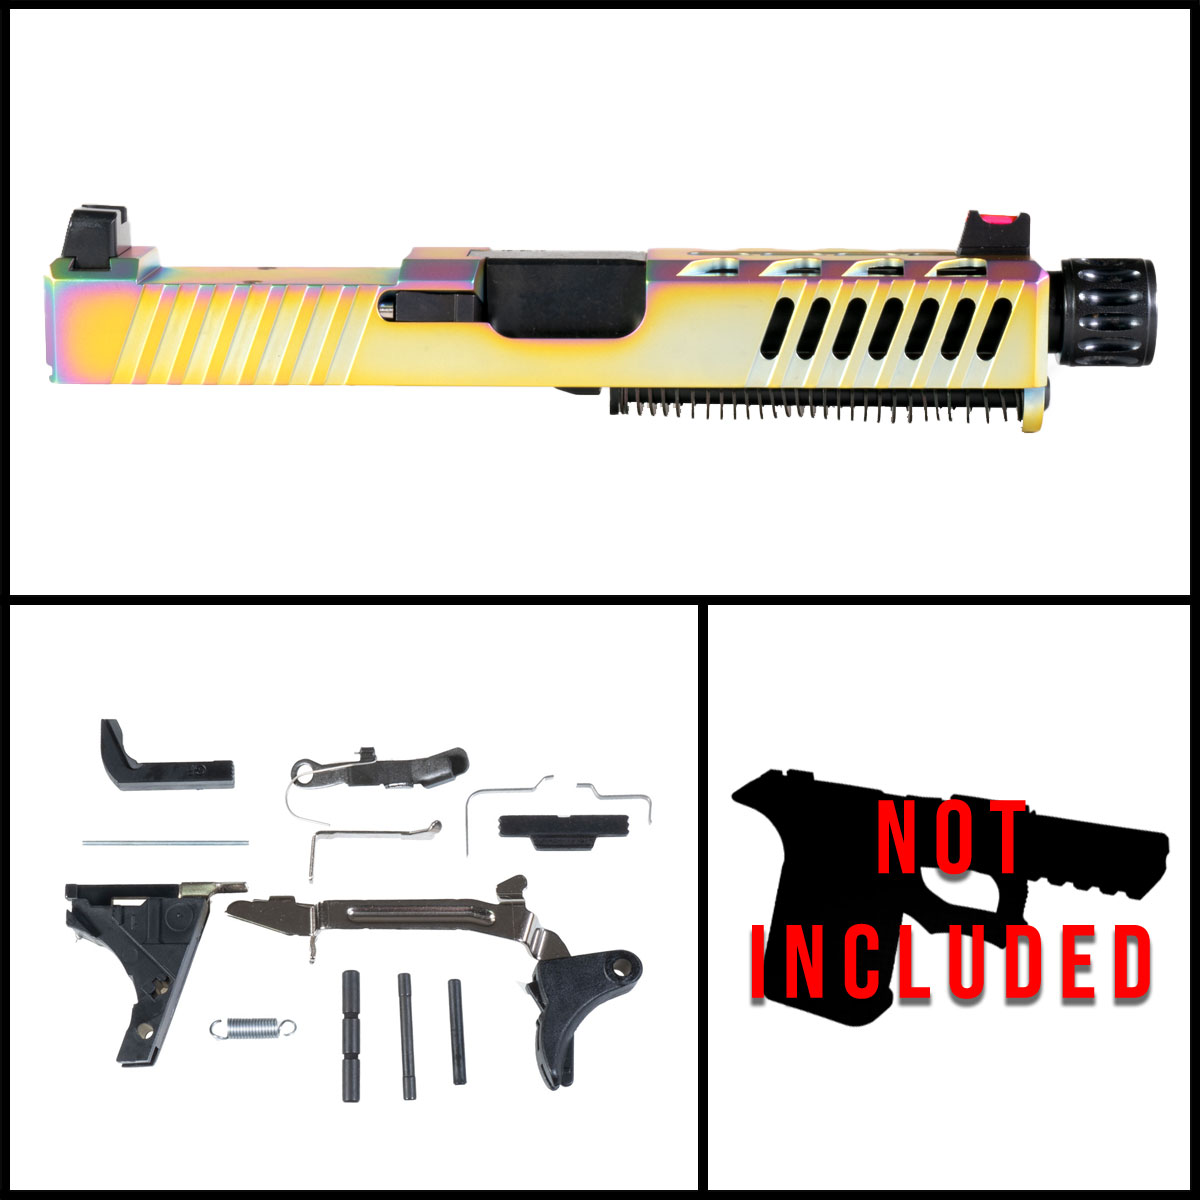 DTT 'Viva Velox' 9mm Full Pistol Build Kits (Everything Minus Frame) - Glock 19 Gen 1-2 Compatible